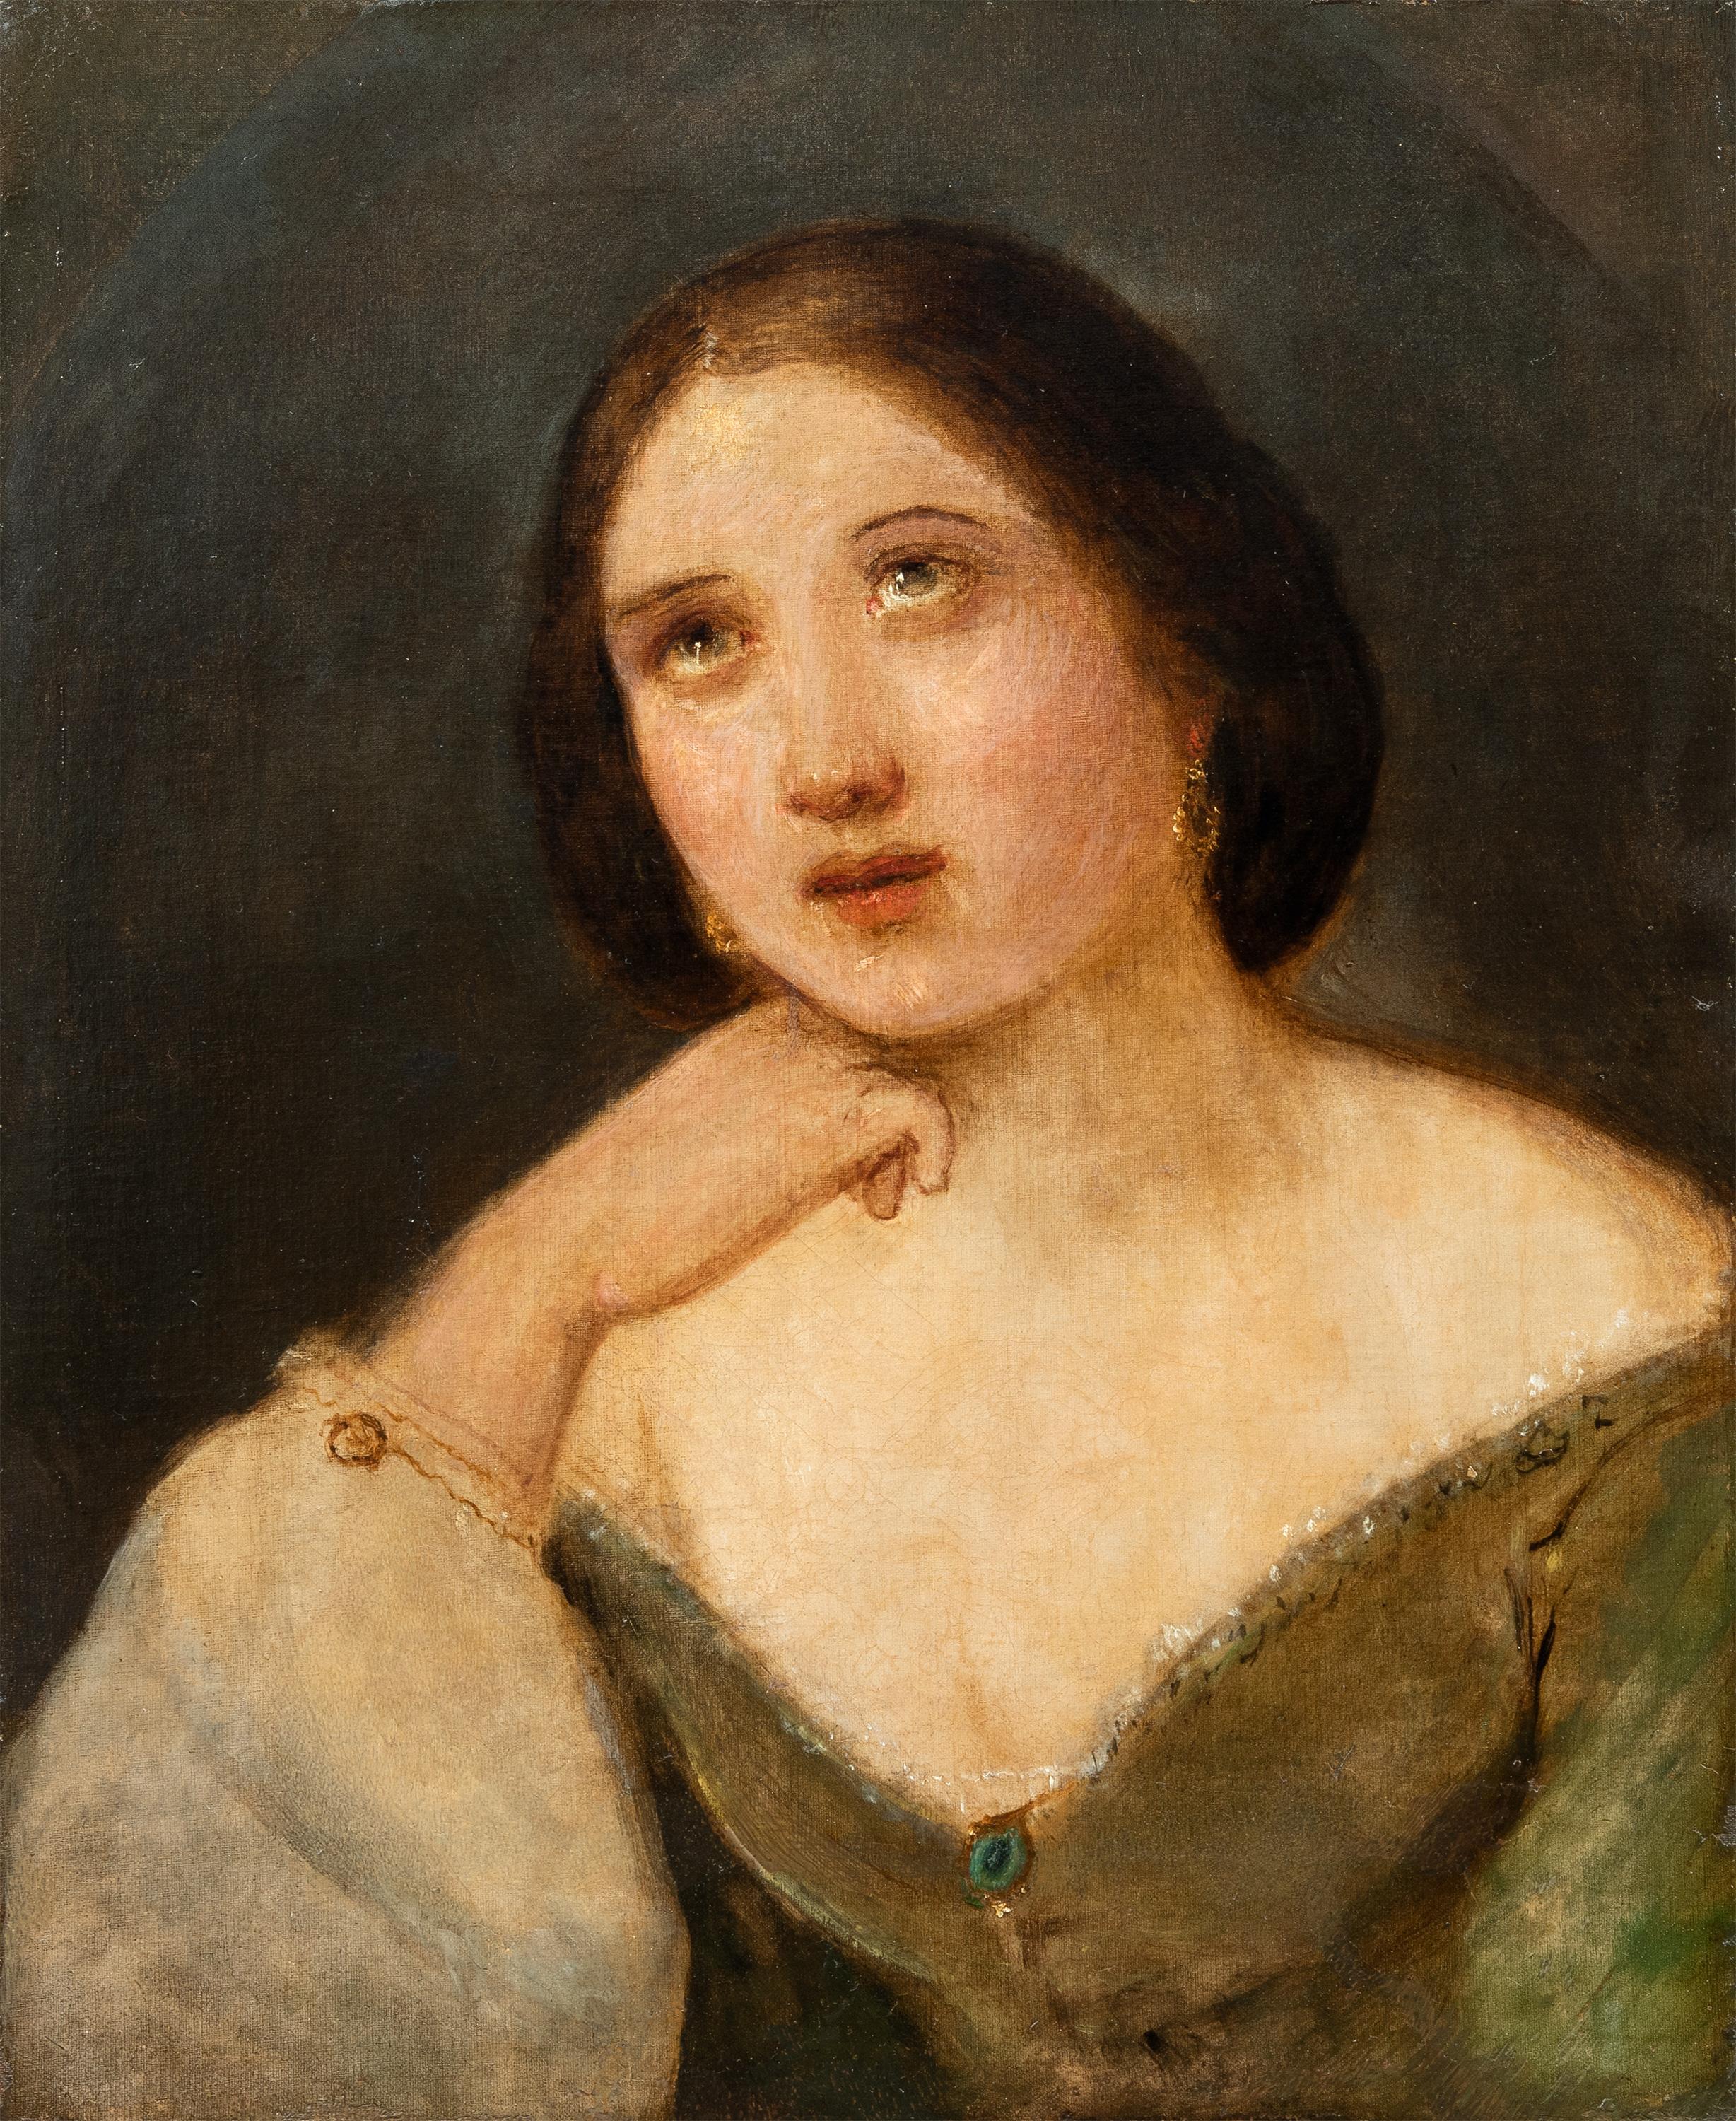 Unknown Portrait Painting - Romanticism Italian painter - 19th century figure painting - Girl portrait 